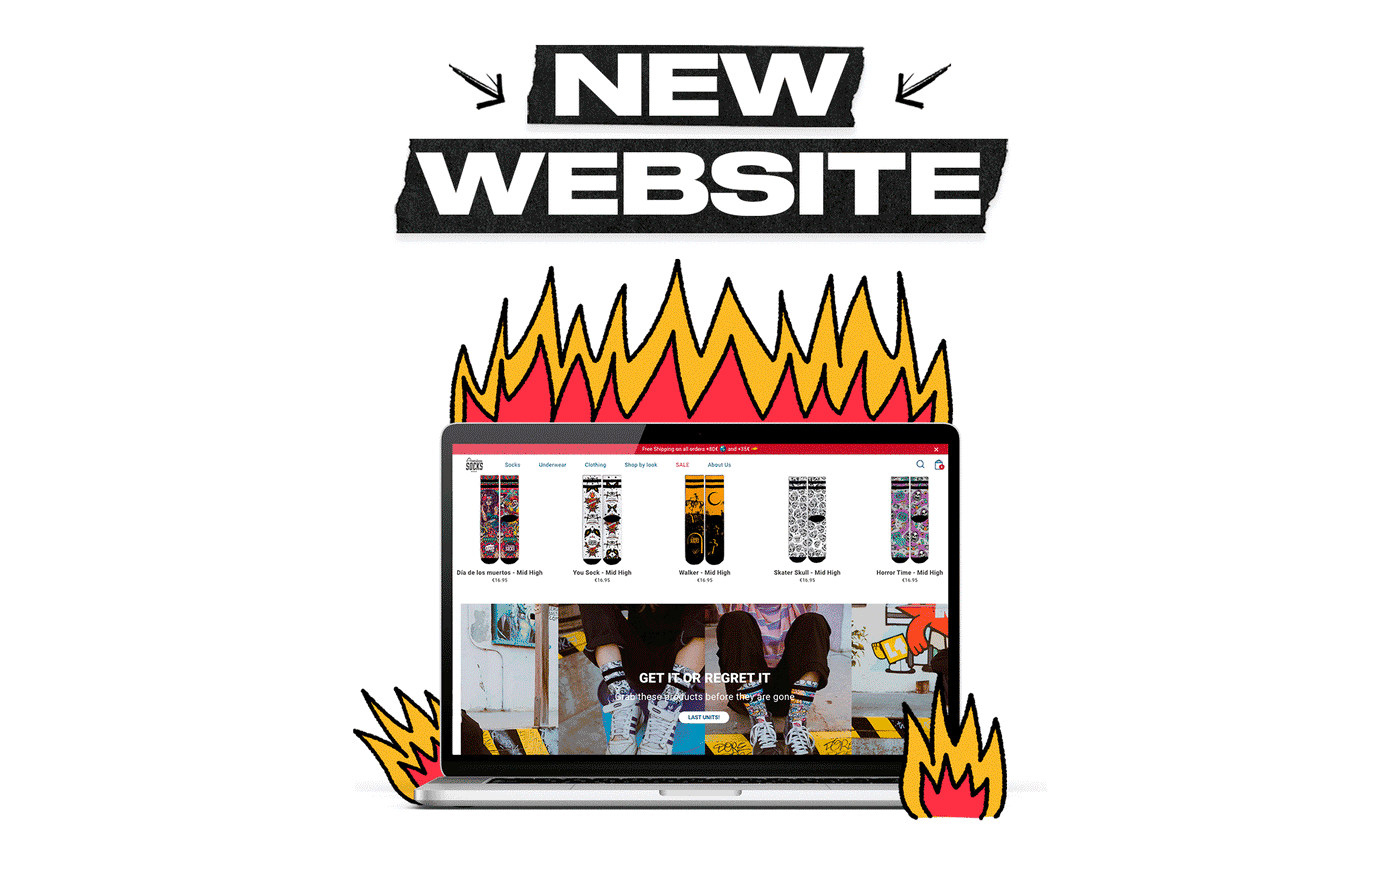 NEW WEBSITE! 🔥